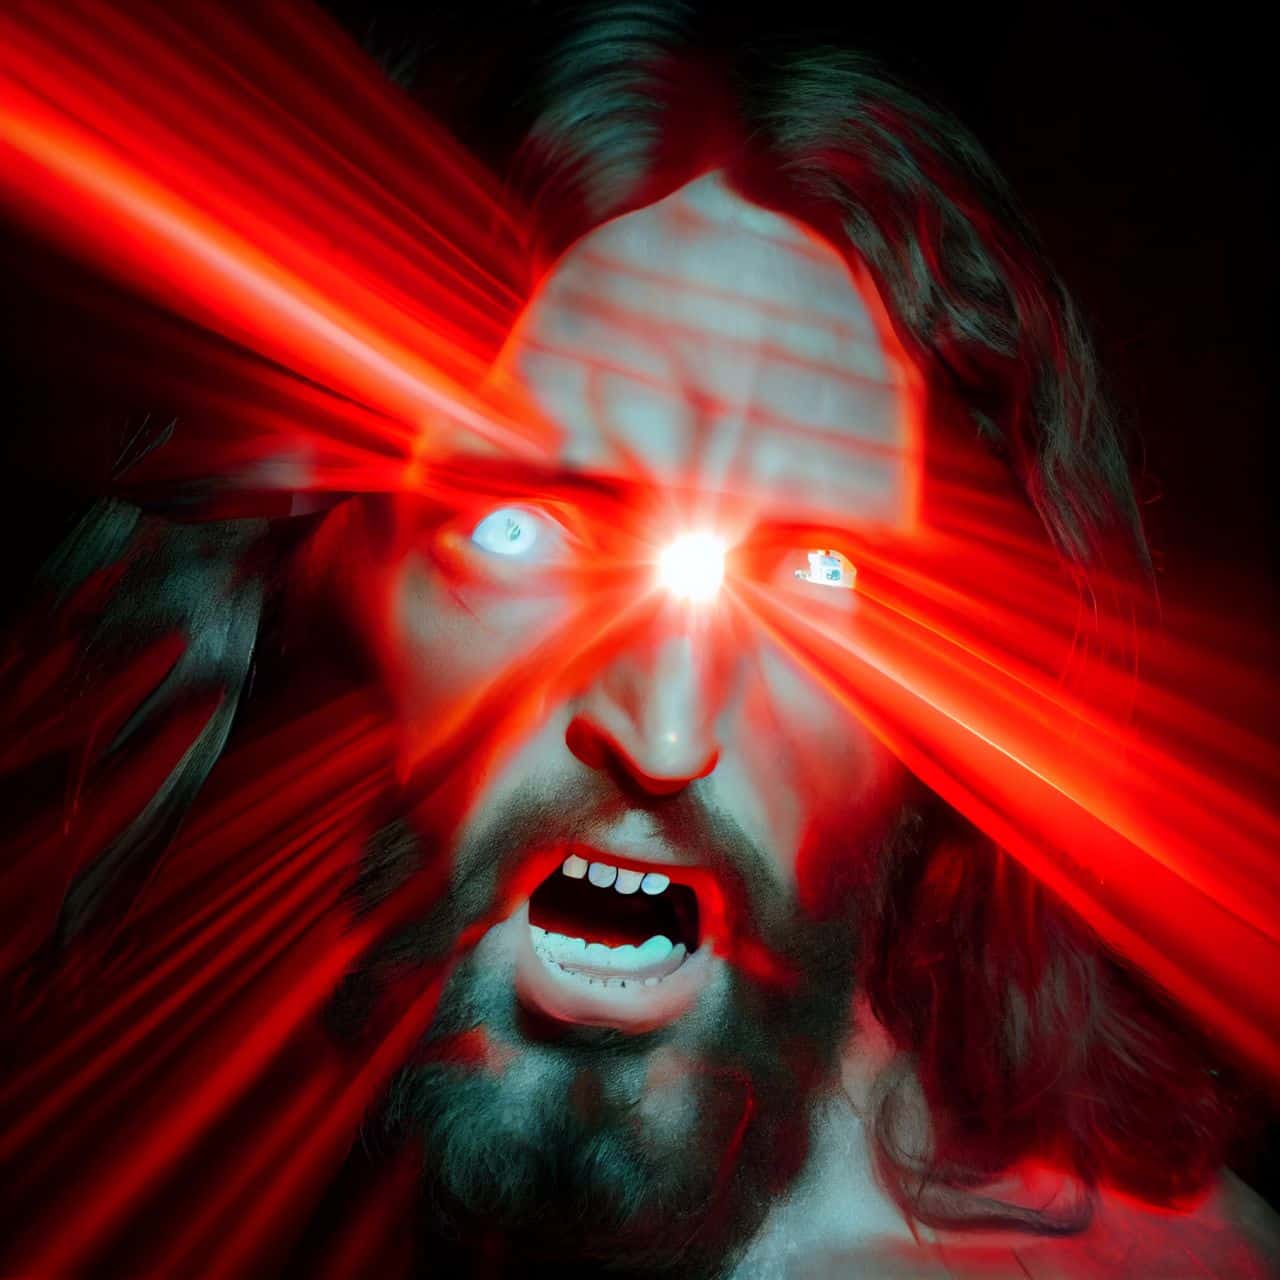 evil jesus shooting lasers